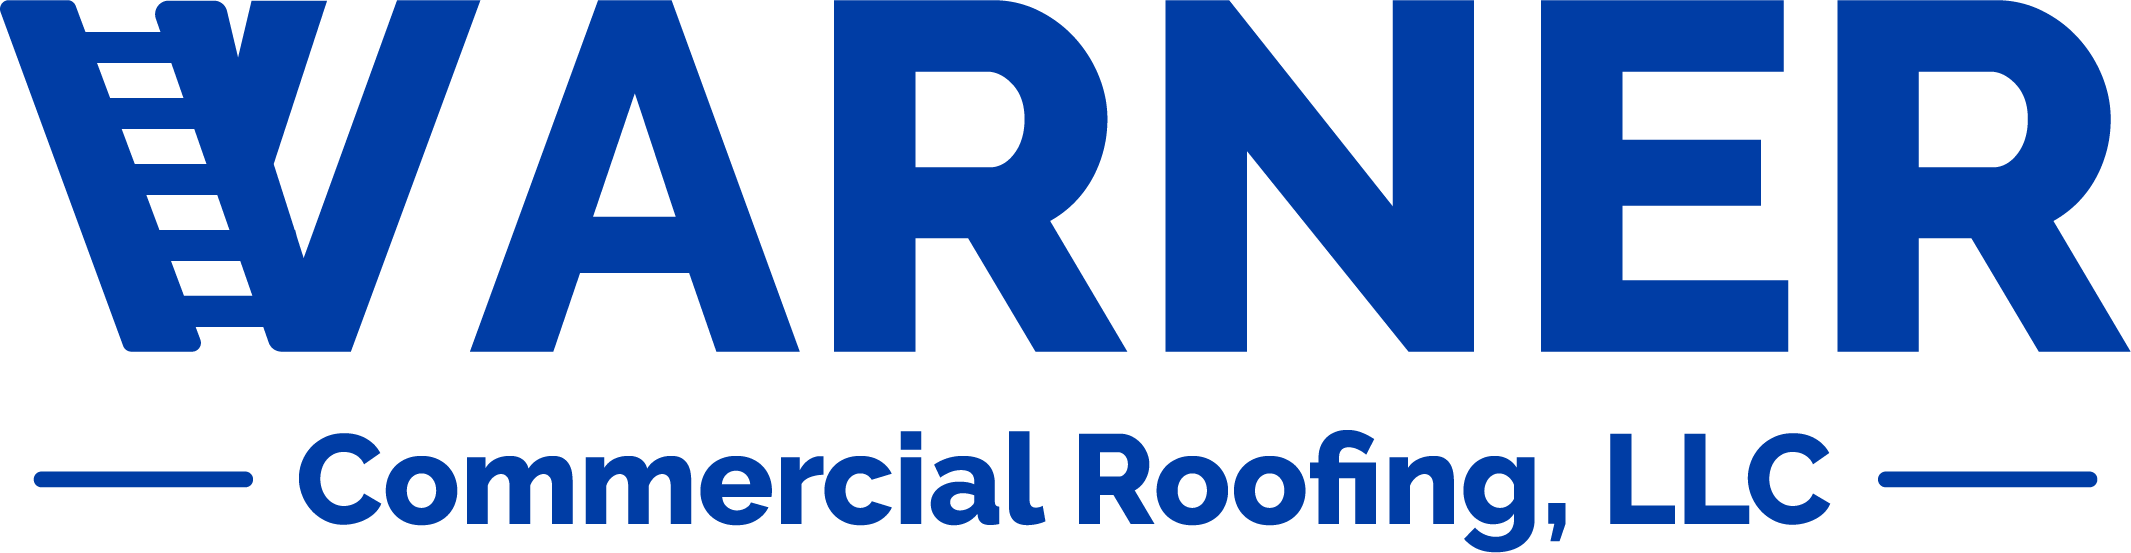 Warner Commercial Roofing, LLC